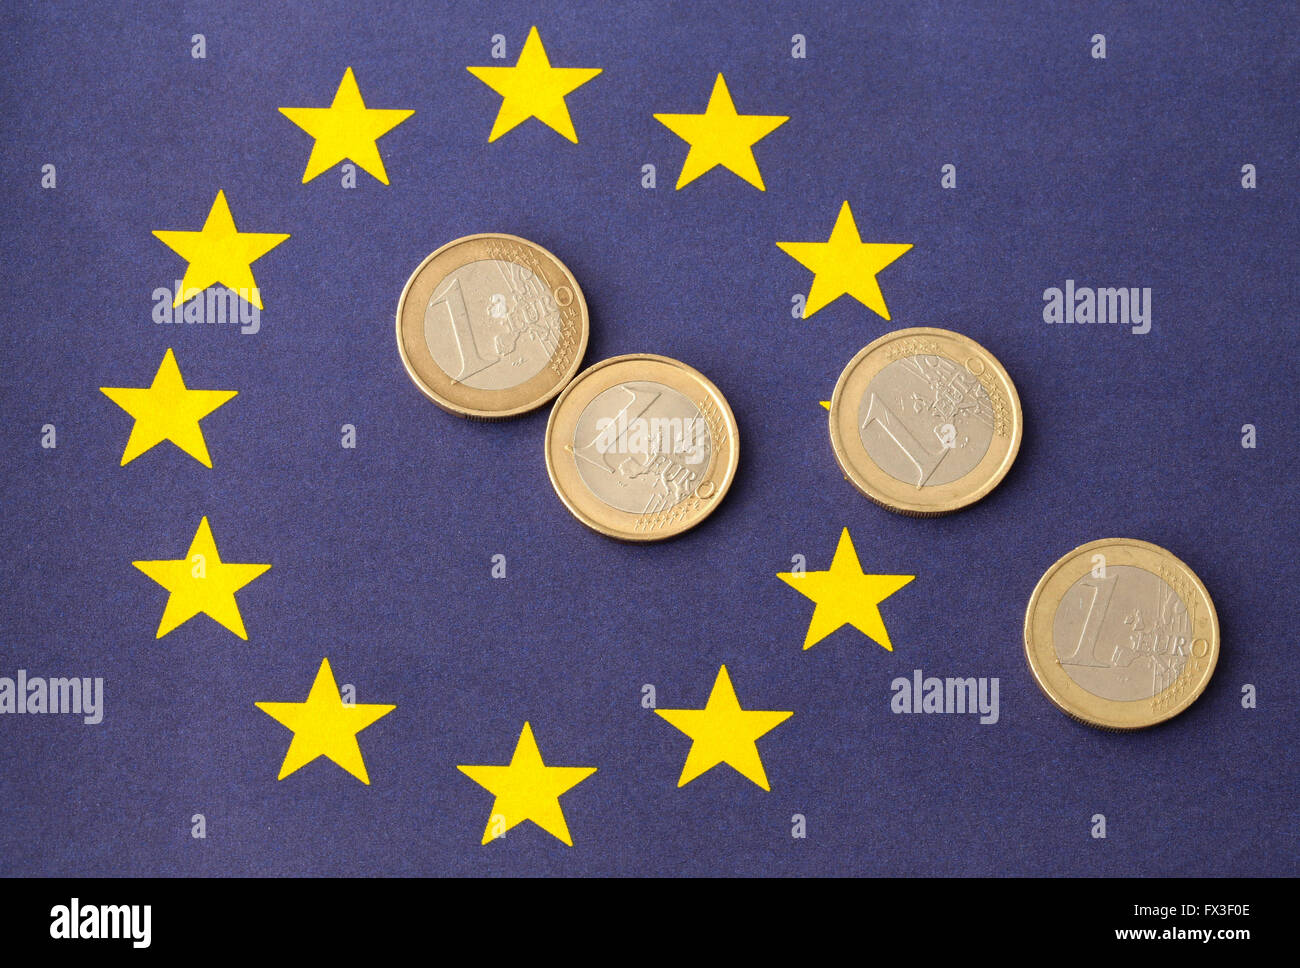 Euro's on top of the European flag Stock Photo